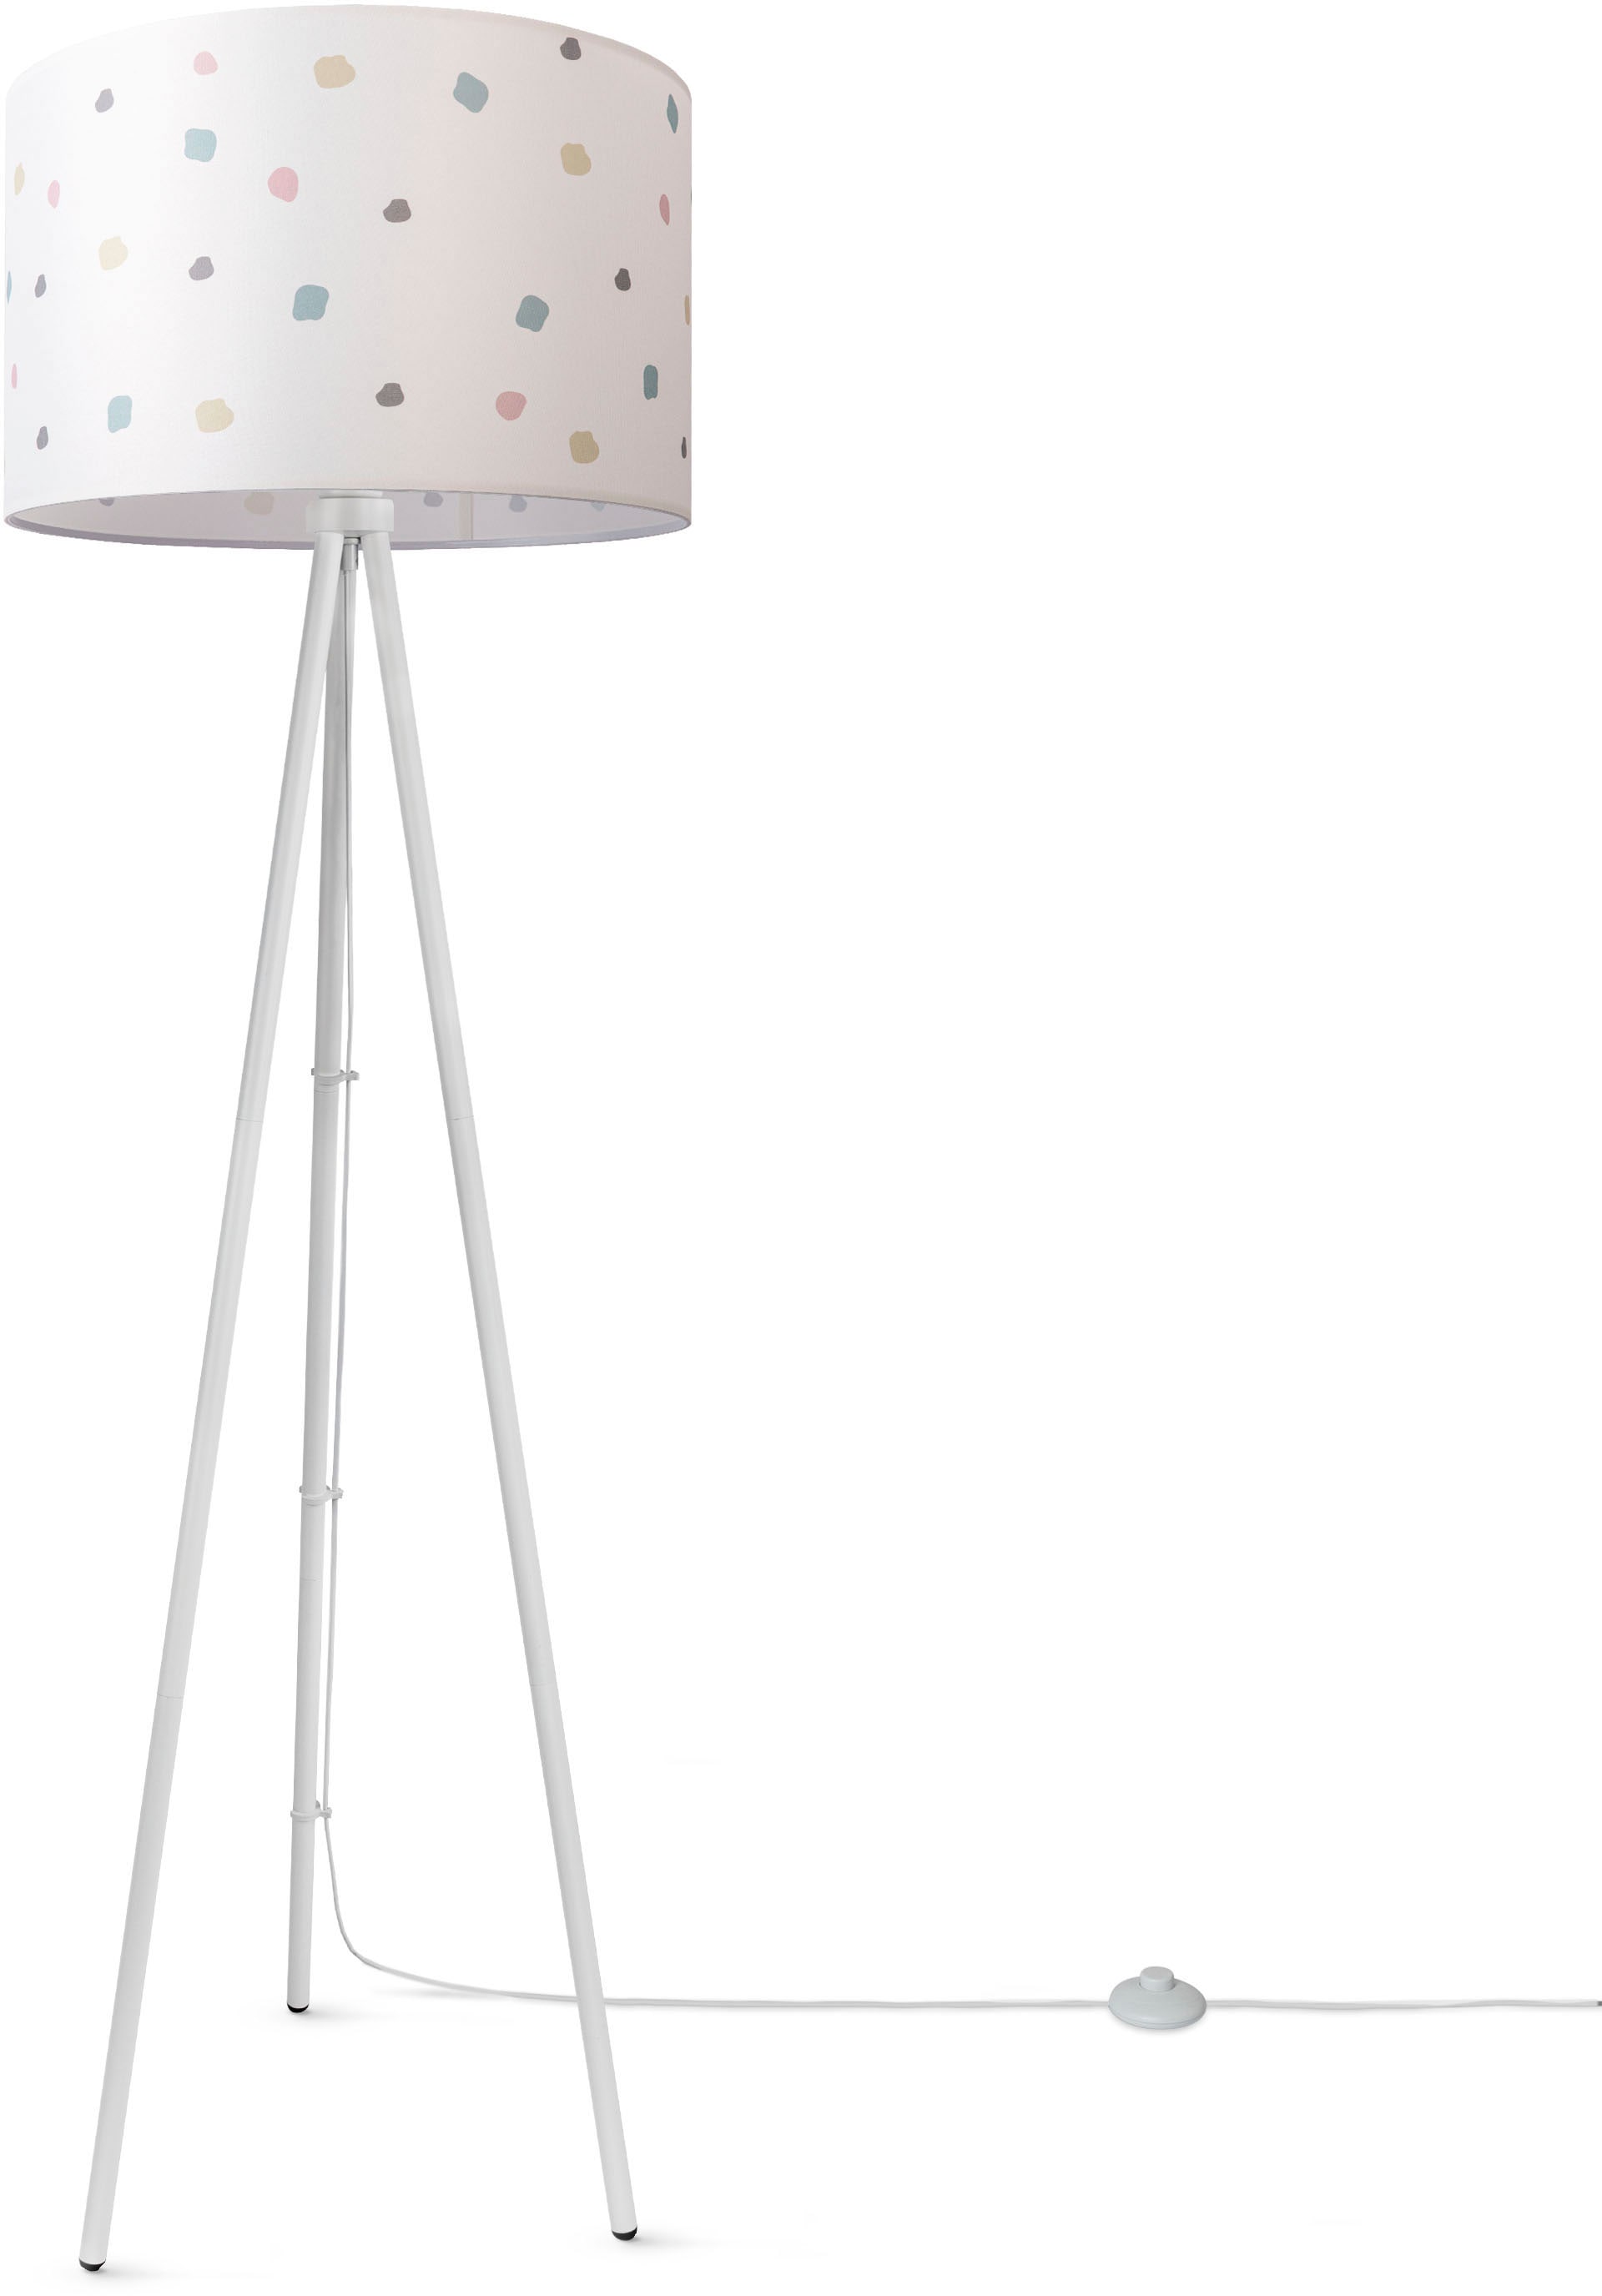 »Trina online Standlampe OTTO Mit bei Rund Bunt Home Paco Stoff Punkte Stecker Lampenschirm Dots«, Dreibein Stehlampe